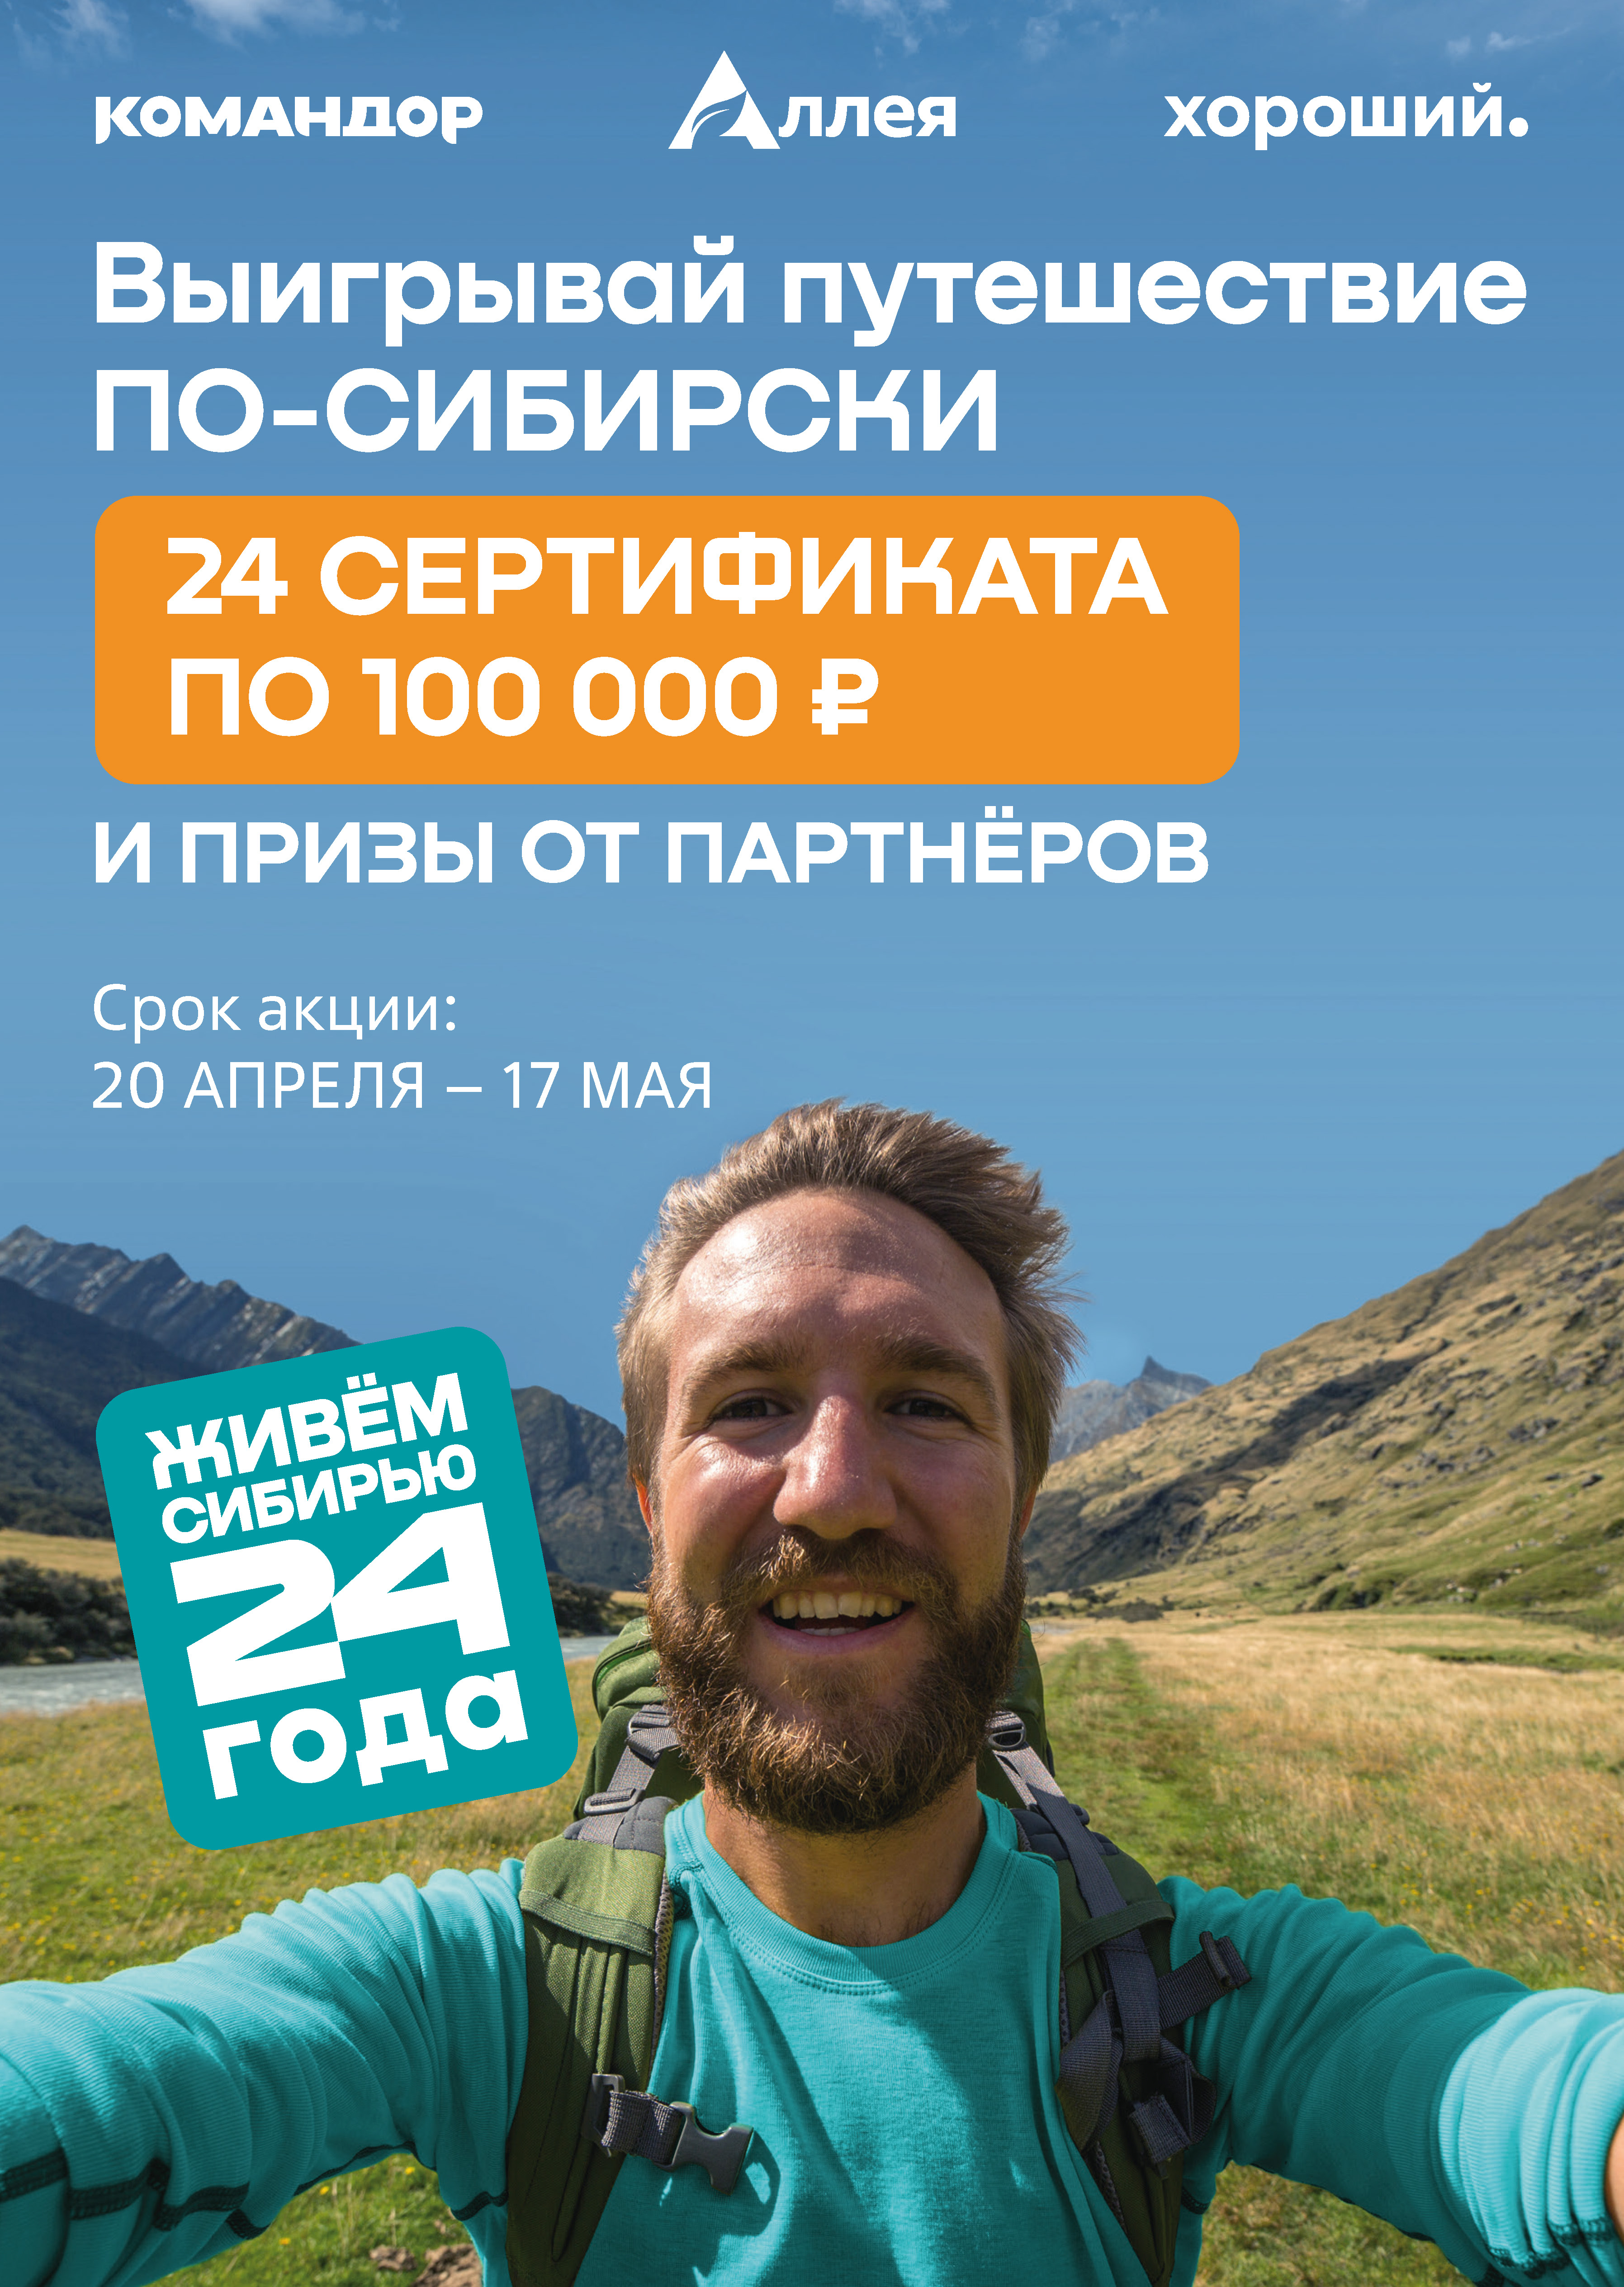 «Командор» разыграет 24 сертификата по 100 000 рублей на путешествие по Сибири  